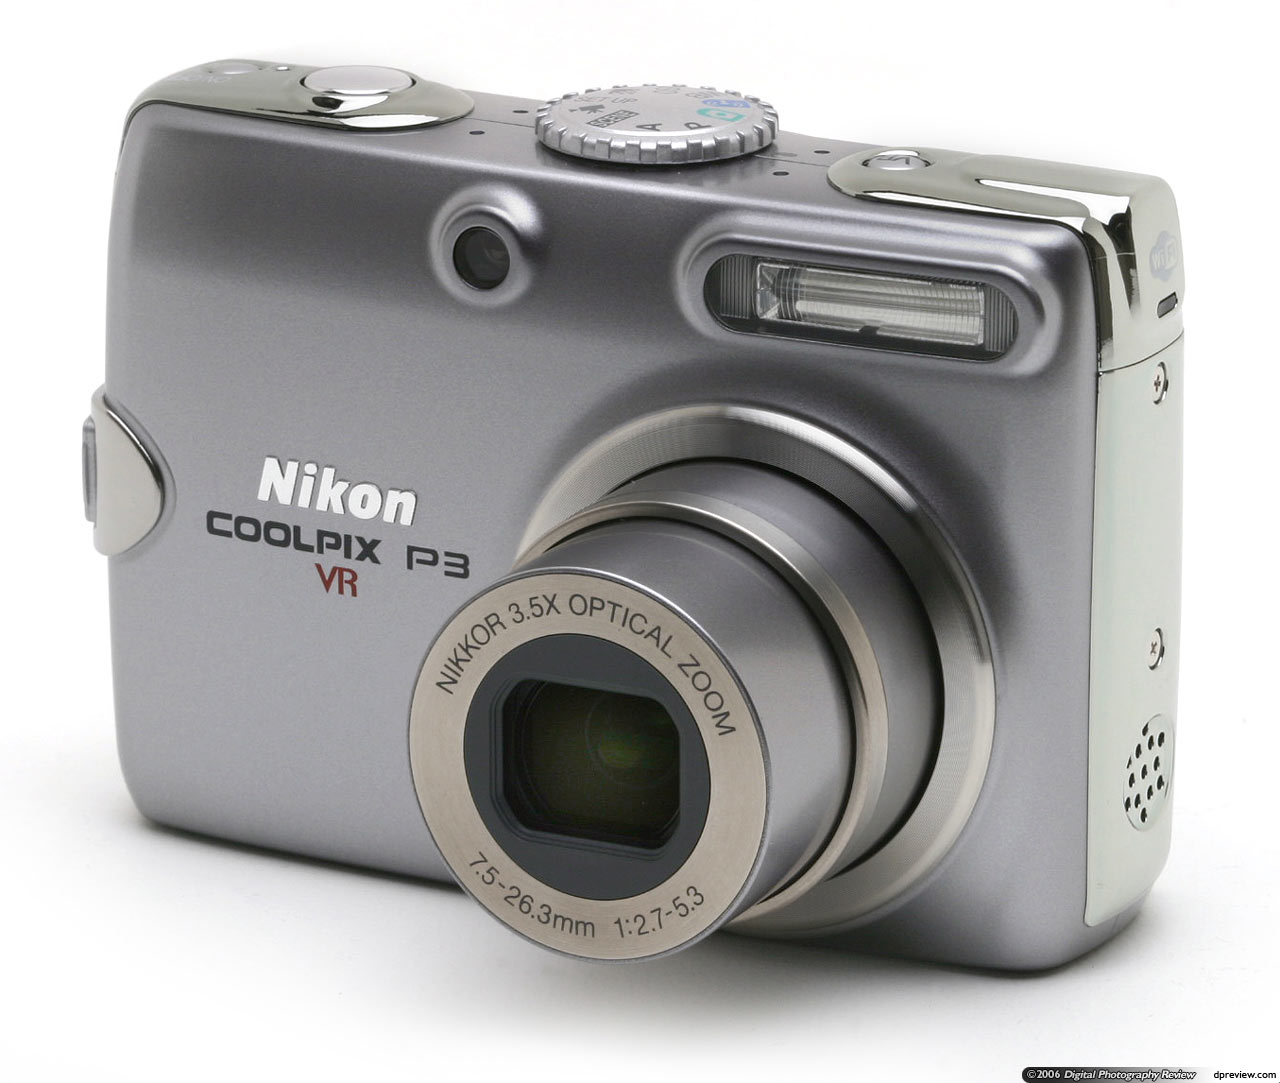 Nikon Coolpix P3 Digital Camera